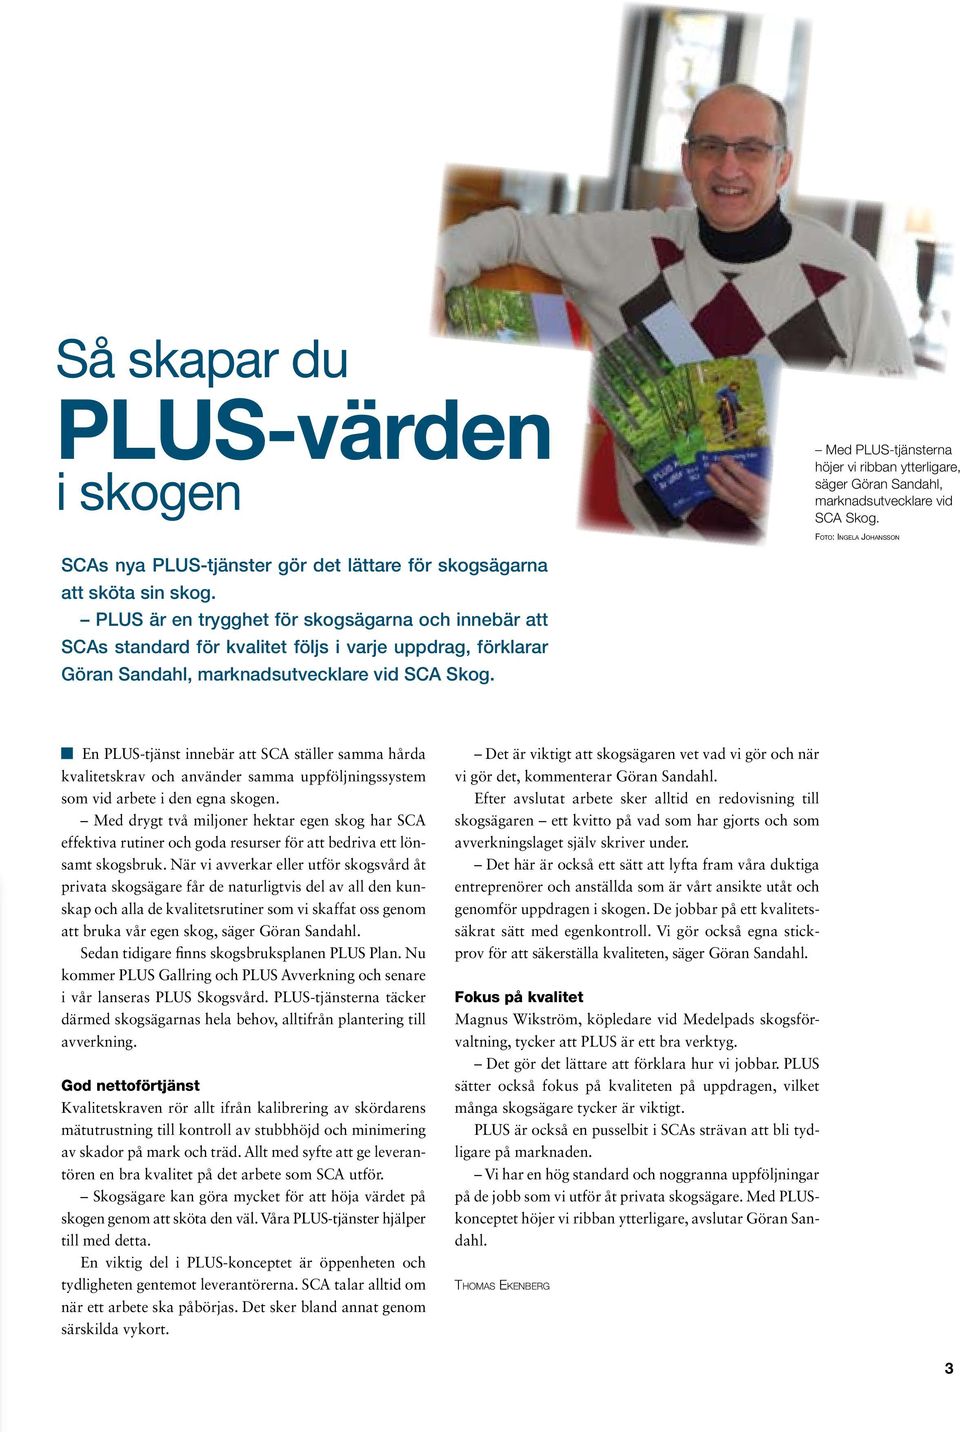 PLUS är en trygghet för skogsägarna och innebär att SCAs standard för kvalitet följs i varje uppdrag, förklarar Göran Sandahl, marknadsutvecklare vid SCA Skog.